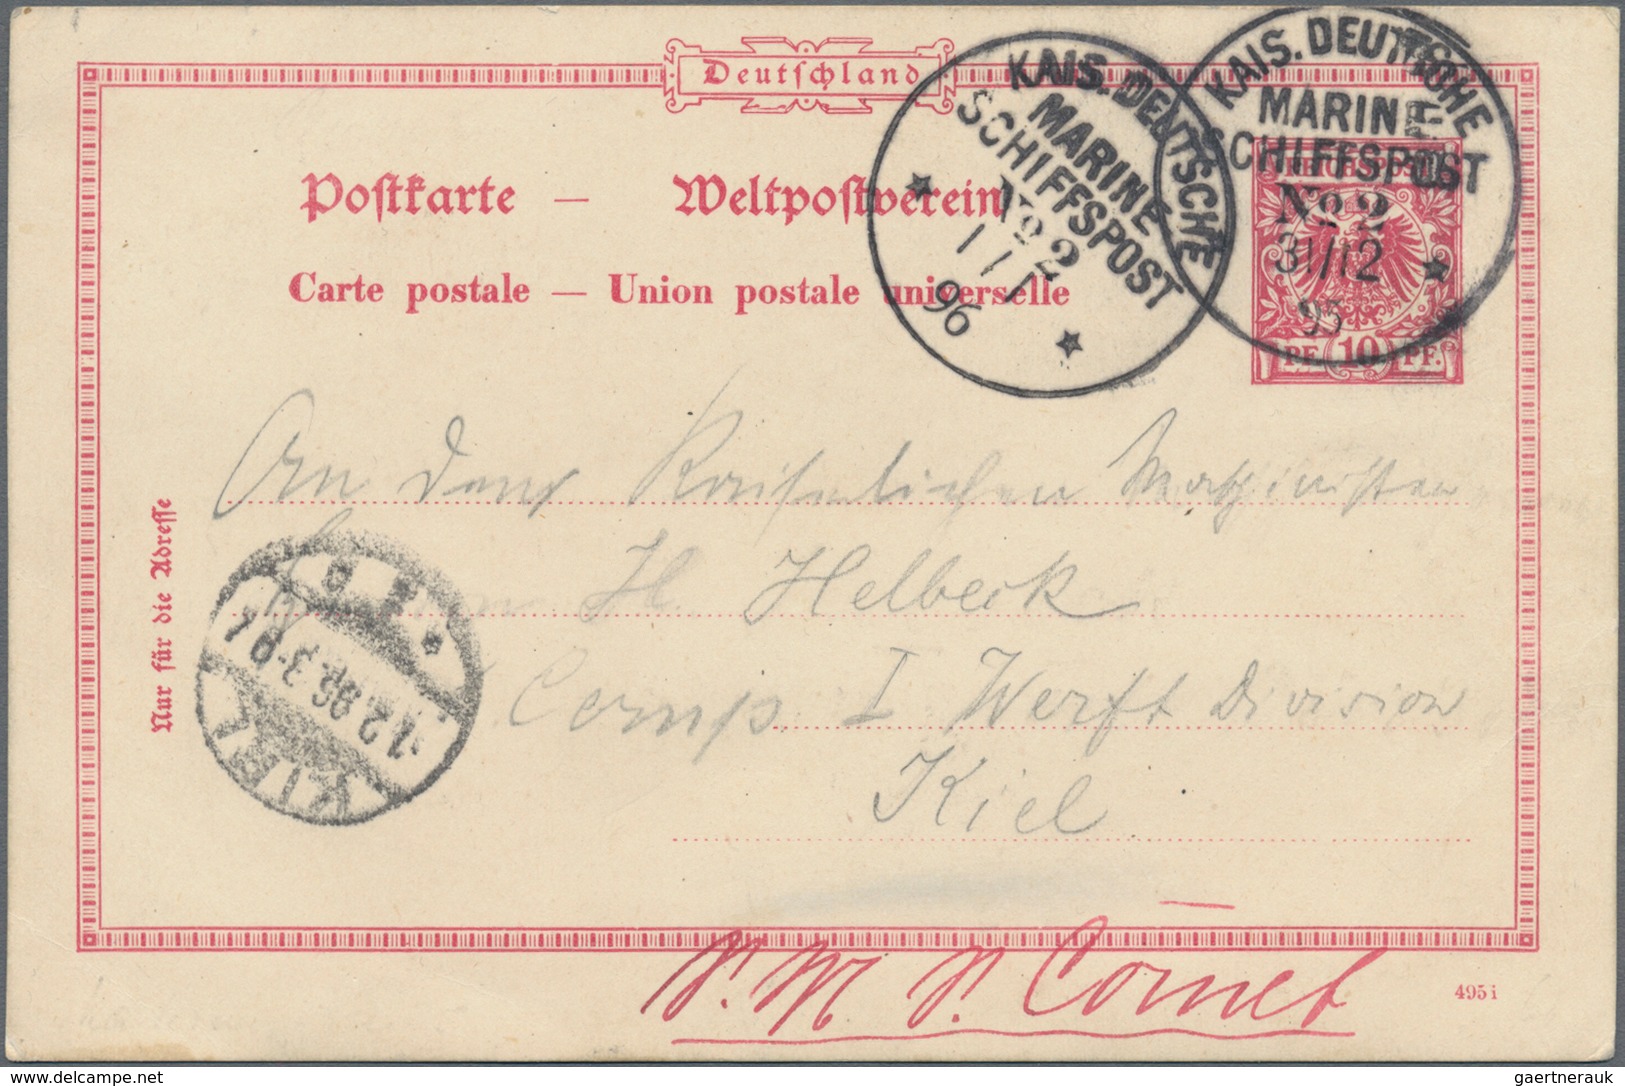 Deutsche Kolonien - Samoa - Besonderheiten: 1895 (31.12.), Stempel "KAIS.DEUTSCHE MARINE-SCHIFFSPOST - Samoa